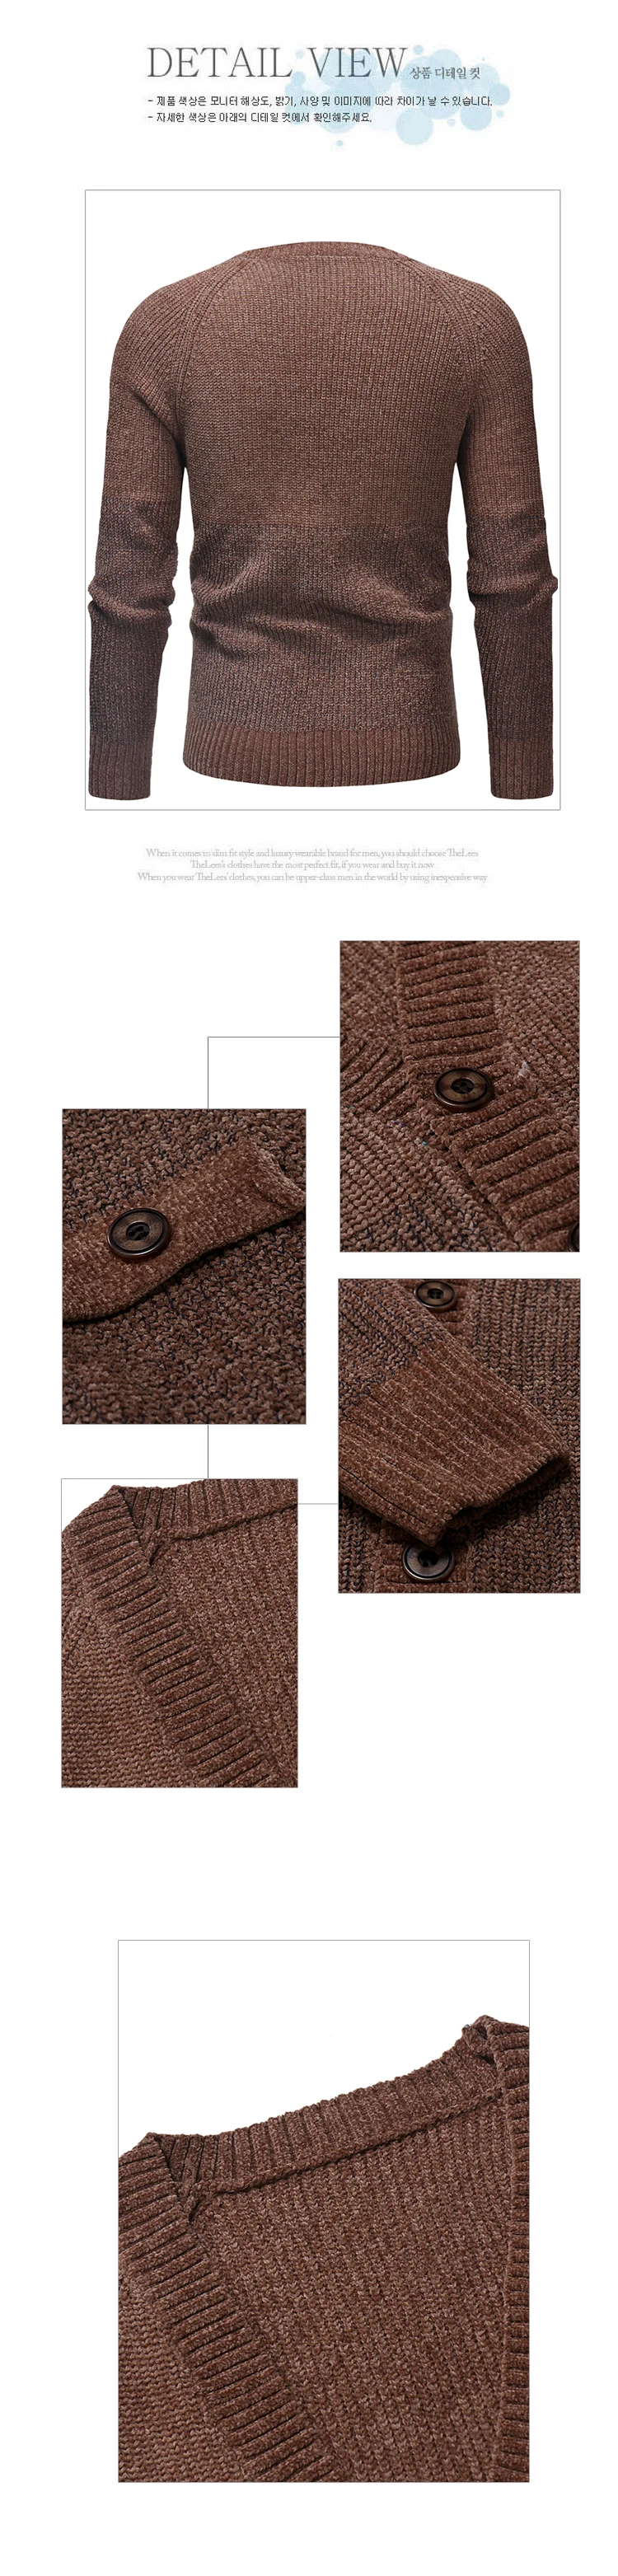 Высокая Класс Для мужчин кардиган свитер с длинным рукавом Трикотаж 2019 Англия Стиль модные зимние v-образным вырезом вязаный Для мужчин